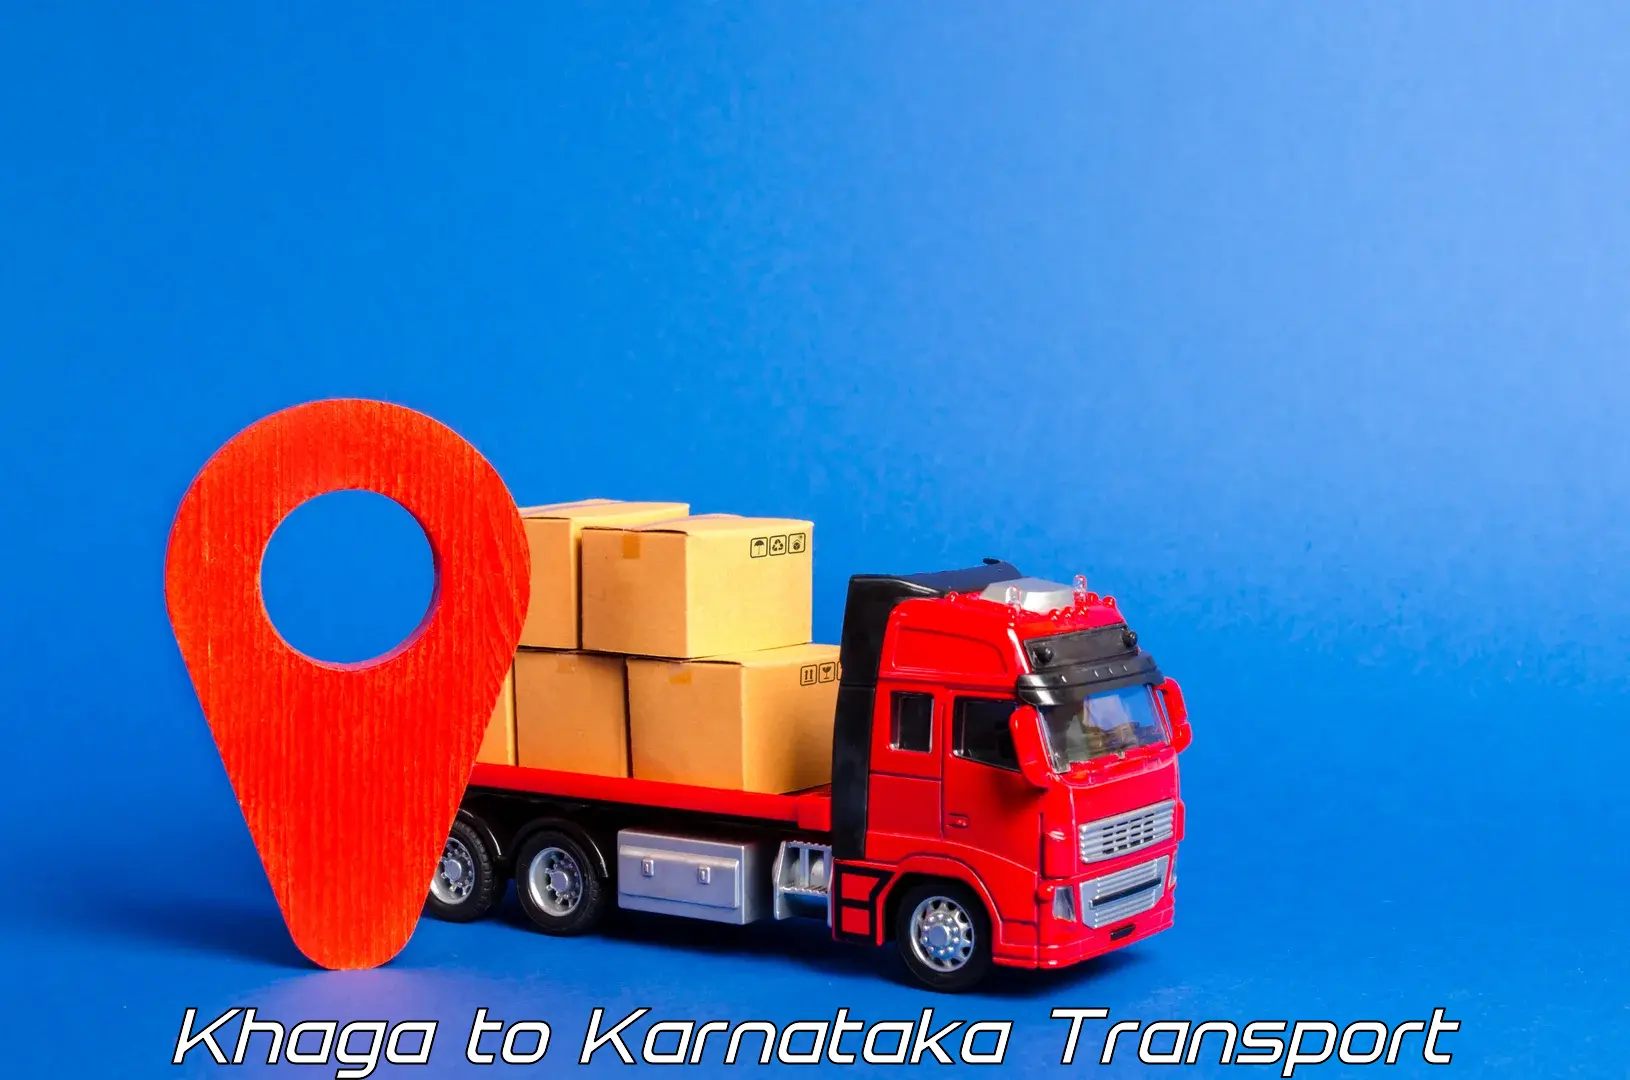 Air cargo transport services Khaga to Holalu